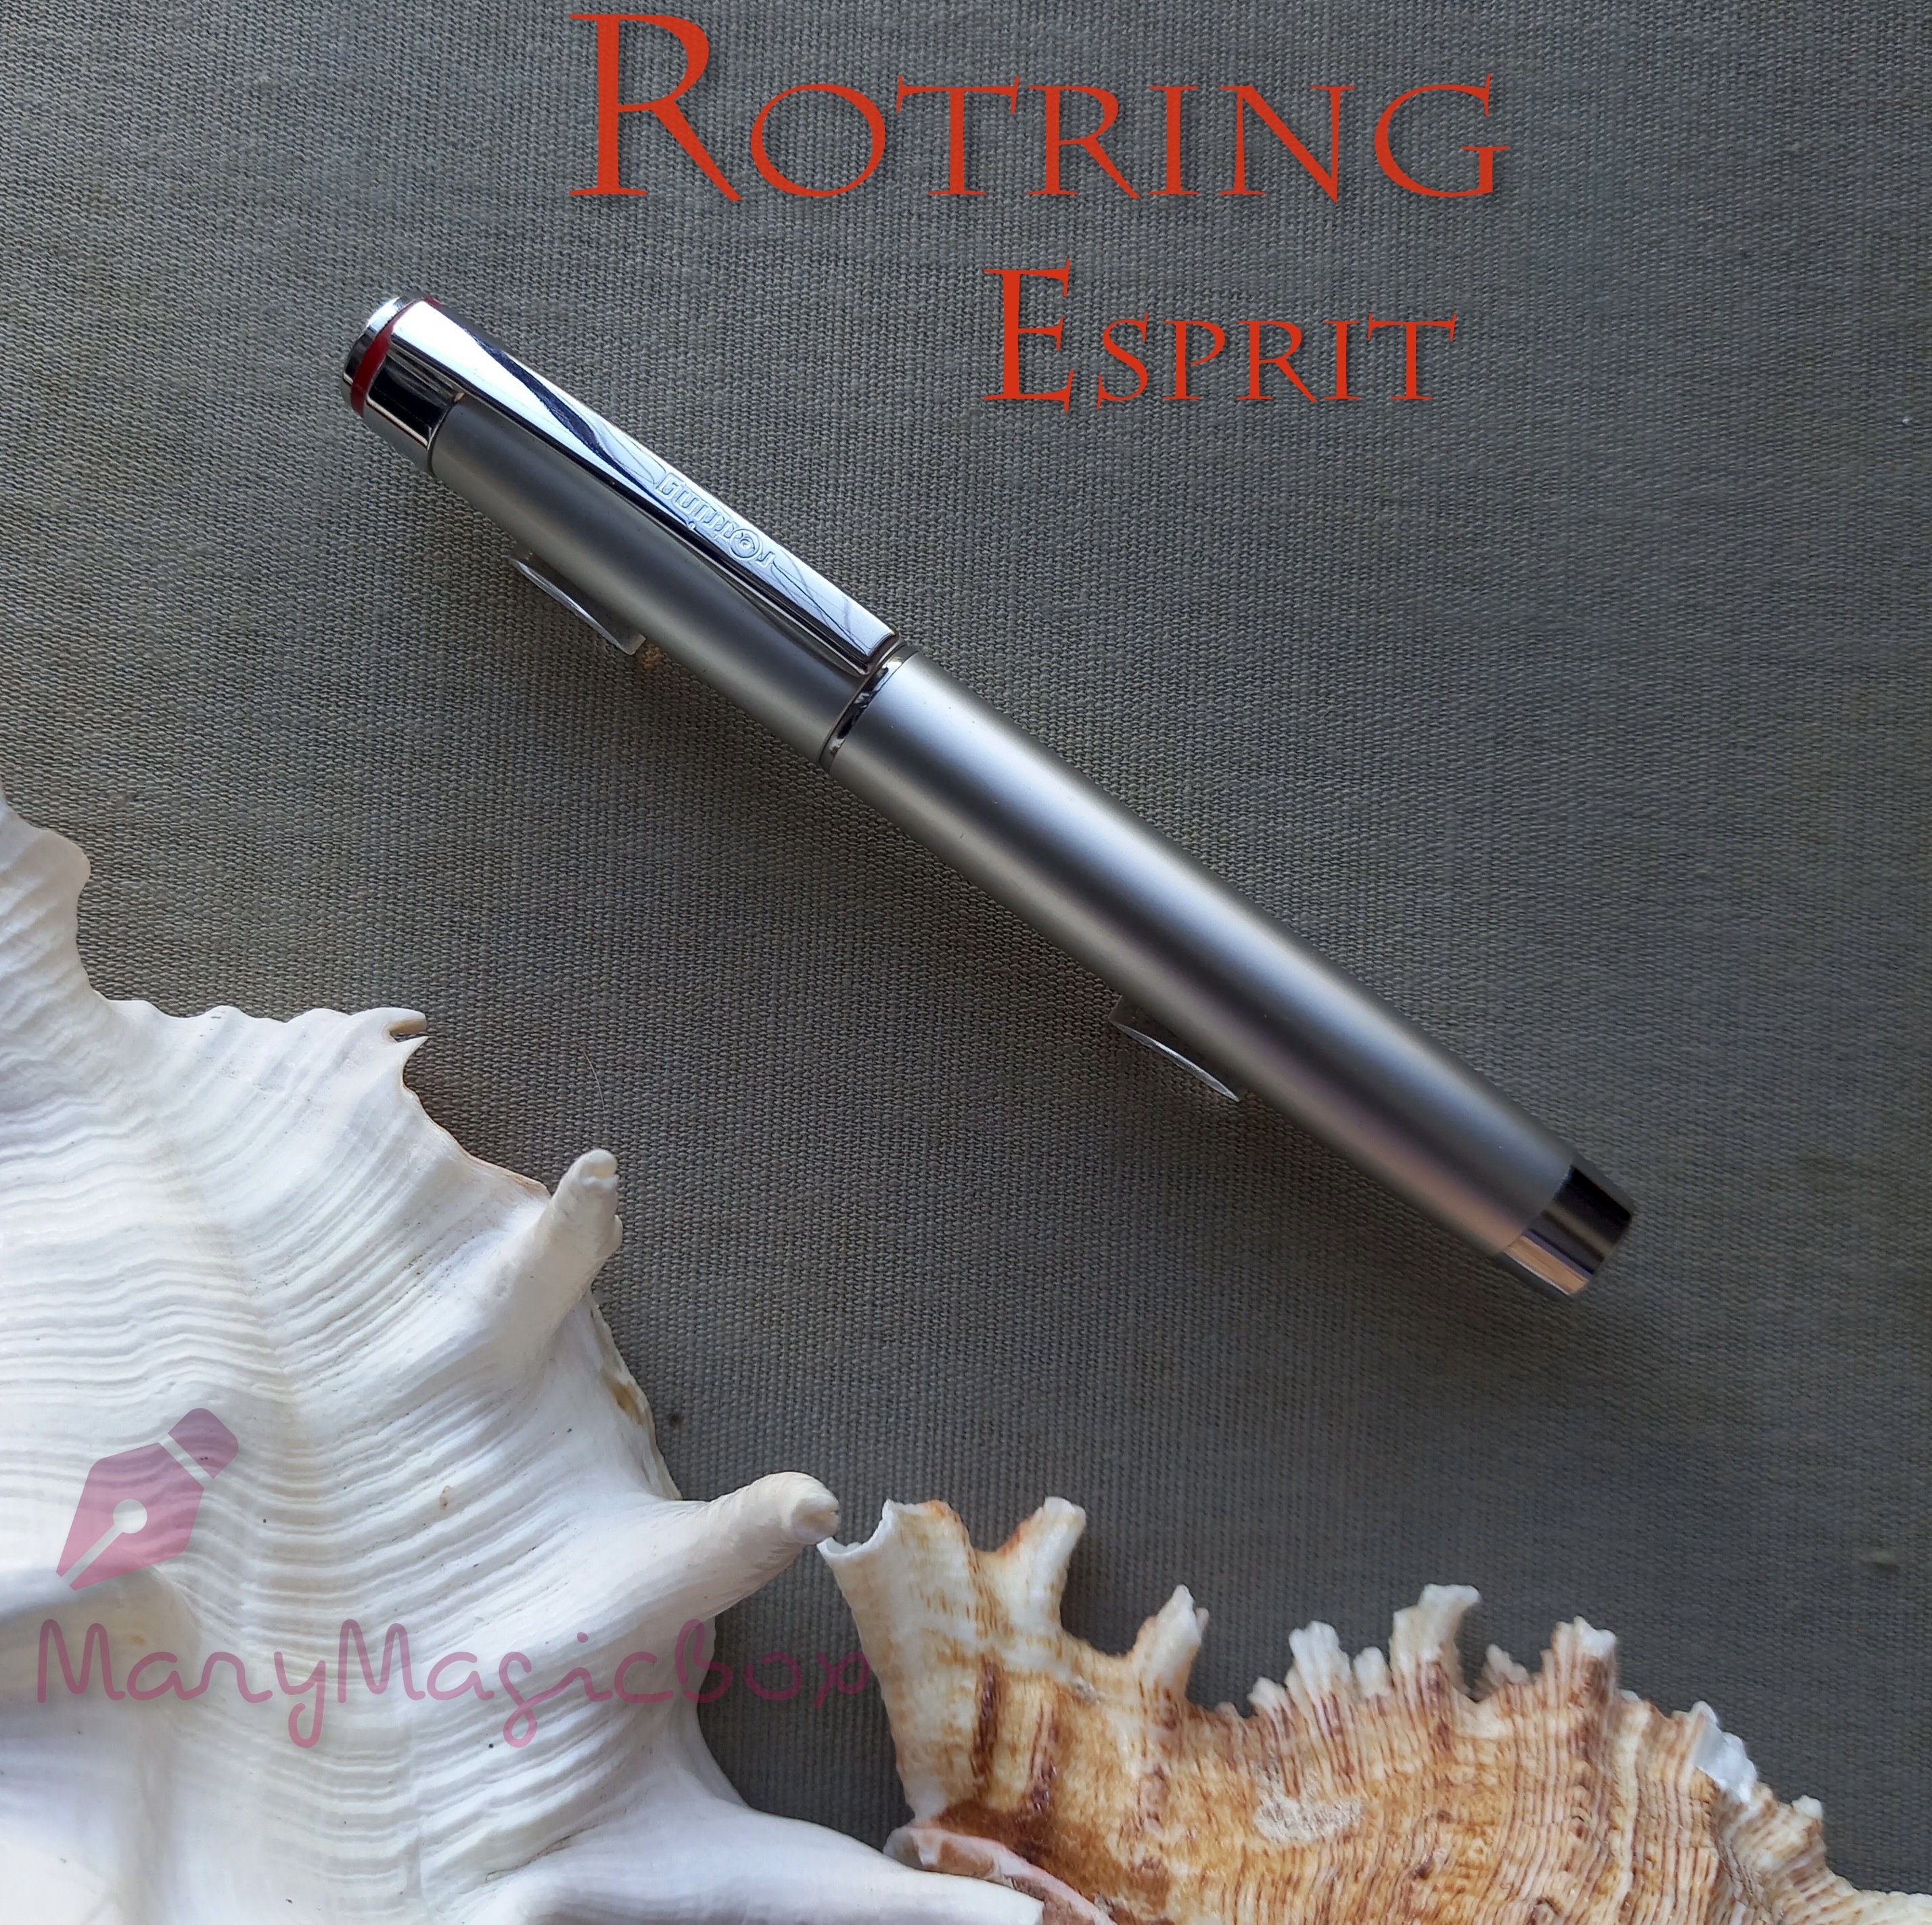 tumor Prestigieus Aardbei Rotring Esprit Vintage Fountain Pen Silver nibm excellent - Etsy